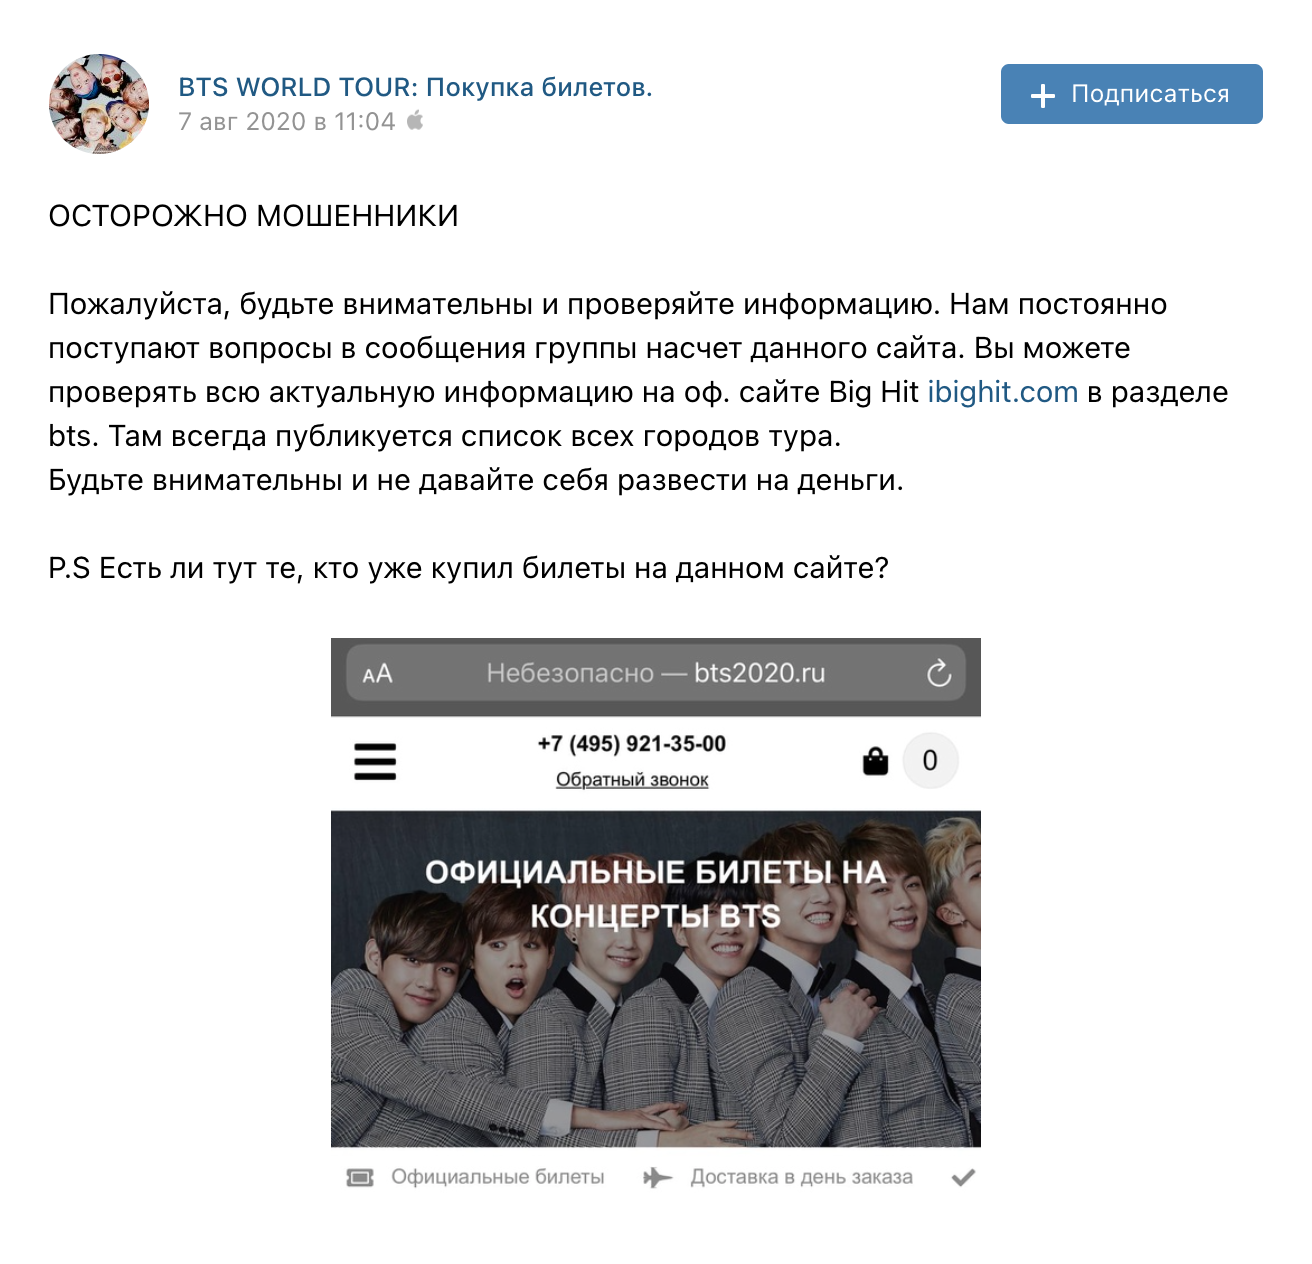 Сообщение с предостережением опубликовали на странице BTS во «Вконтакте». Но кто-то уже мог попасться мошенникам и отдать деньги